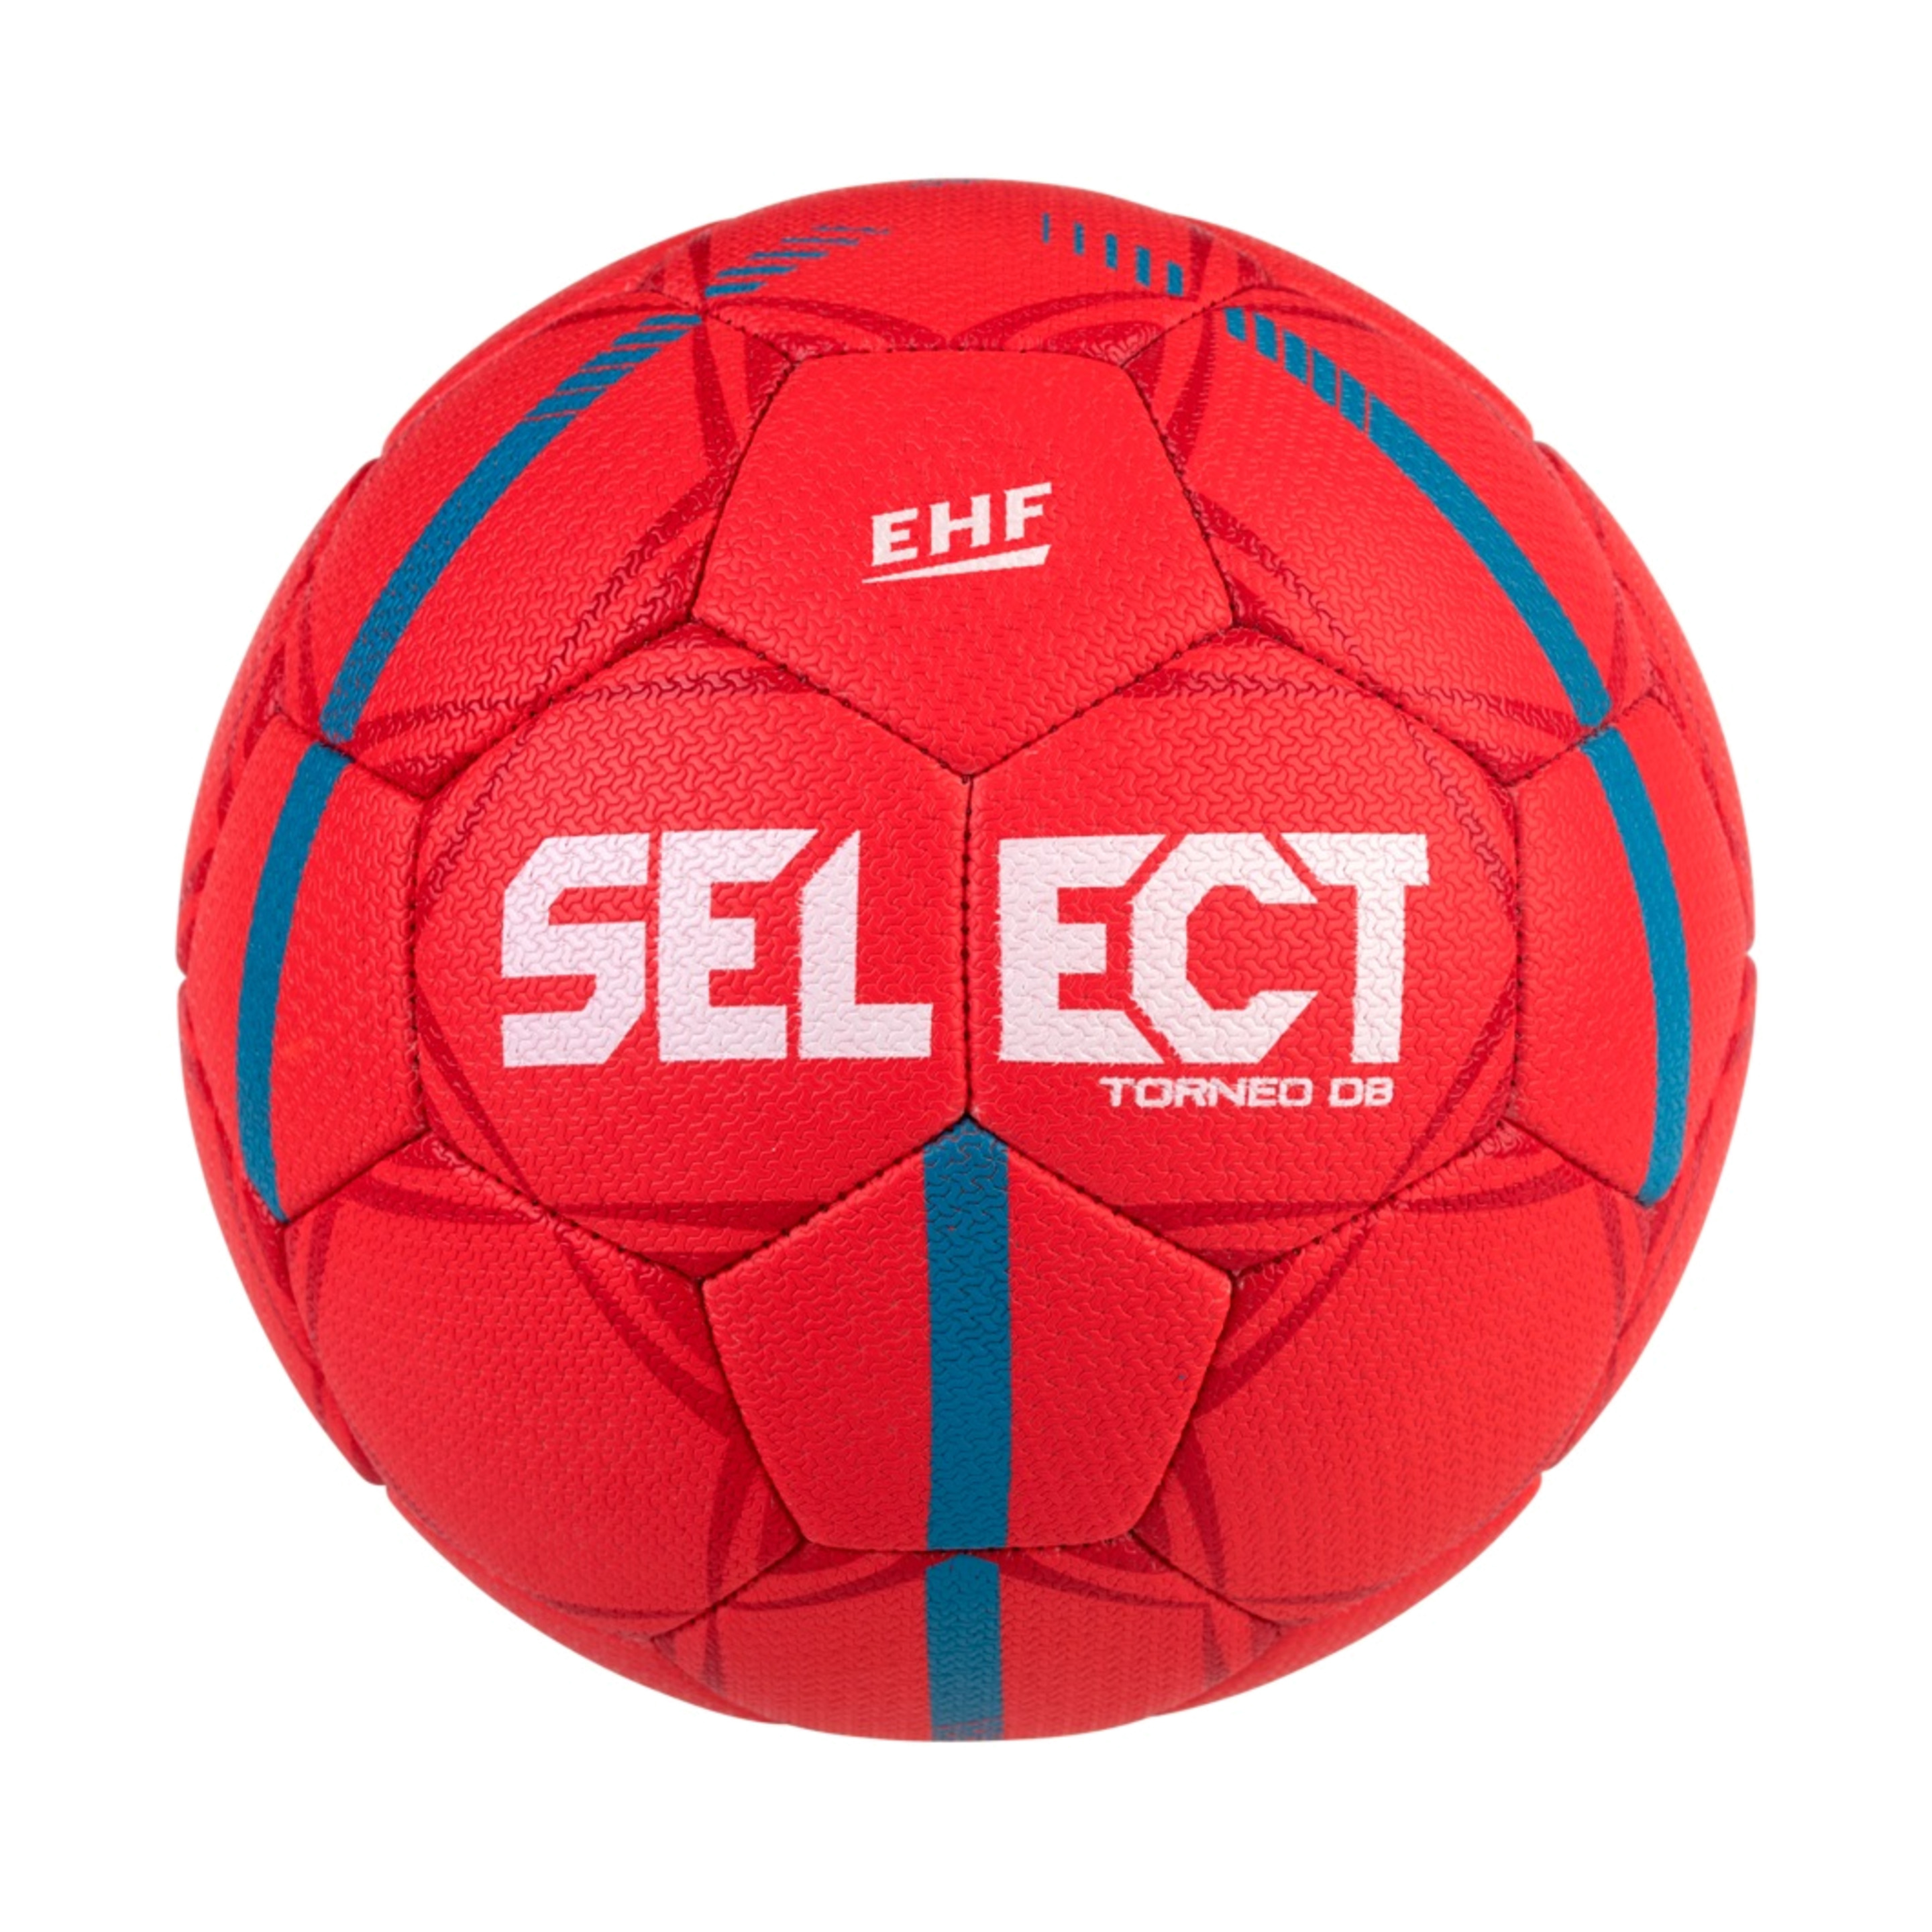 Balonmano Select Hb Torneo Db V21 - rojo - 